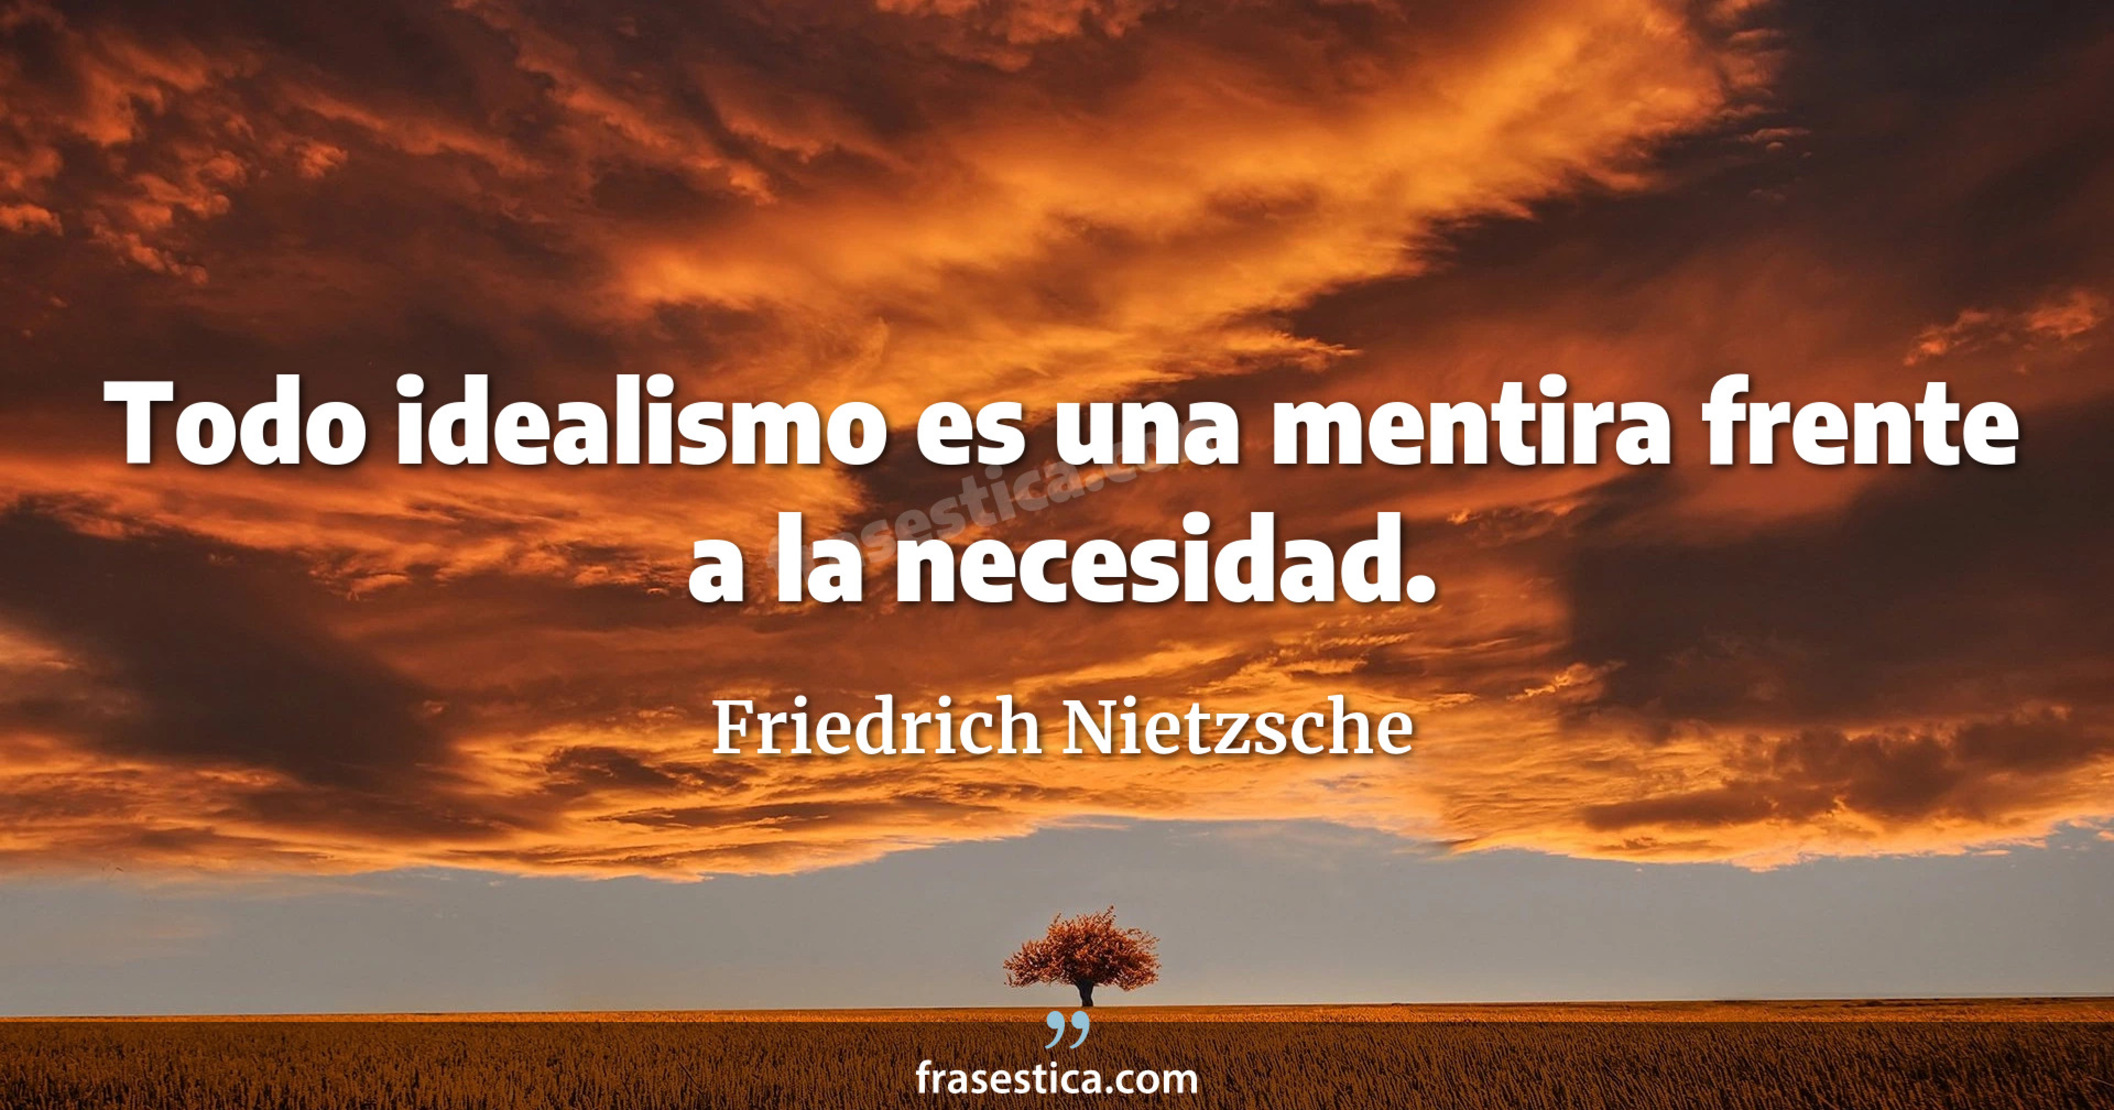 Todo idealismo es una mentira frente a la necesidad. - Friedrich Nietzsche